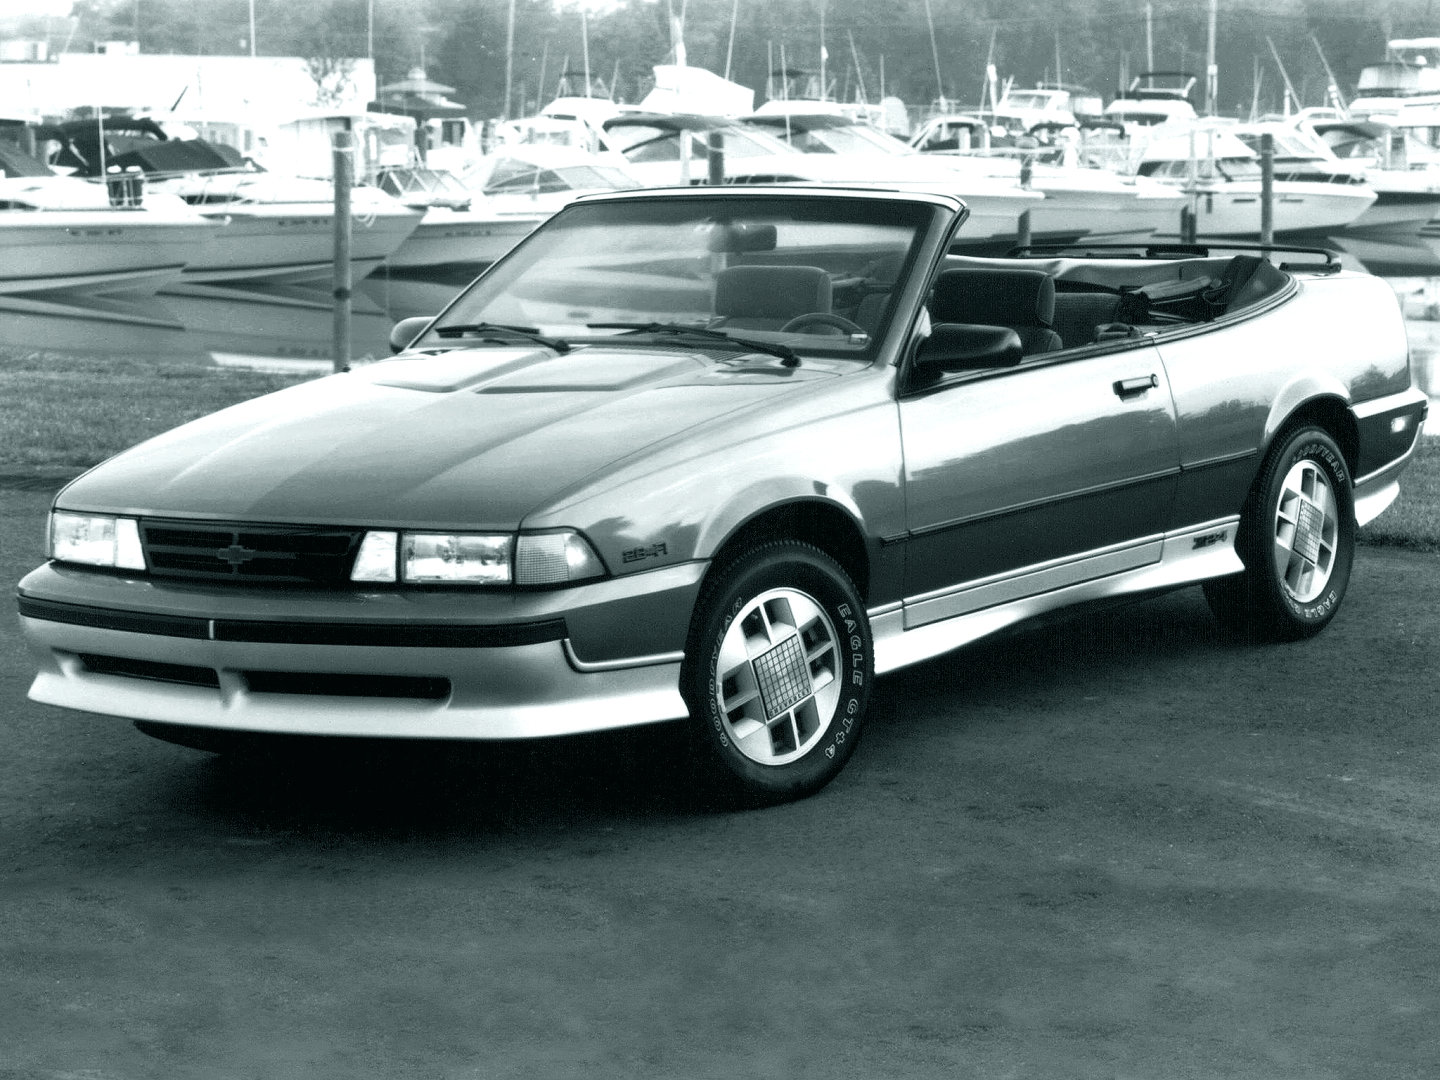 Chevrolet cavalier 1988 photo - 5